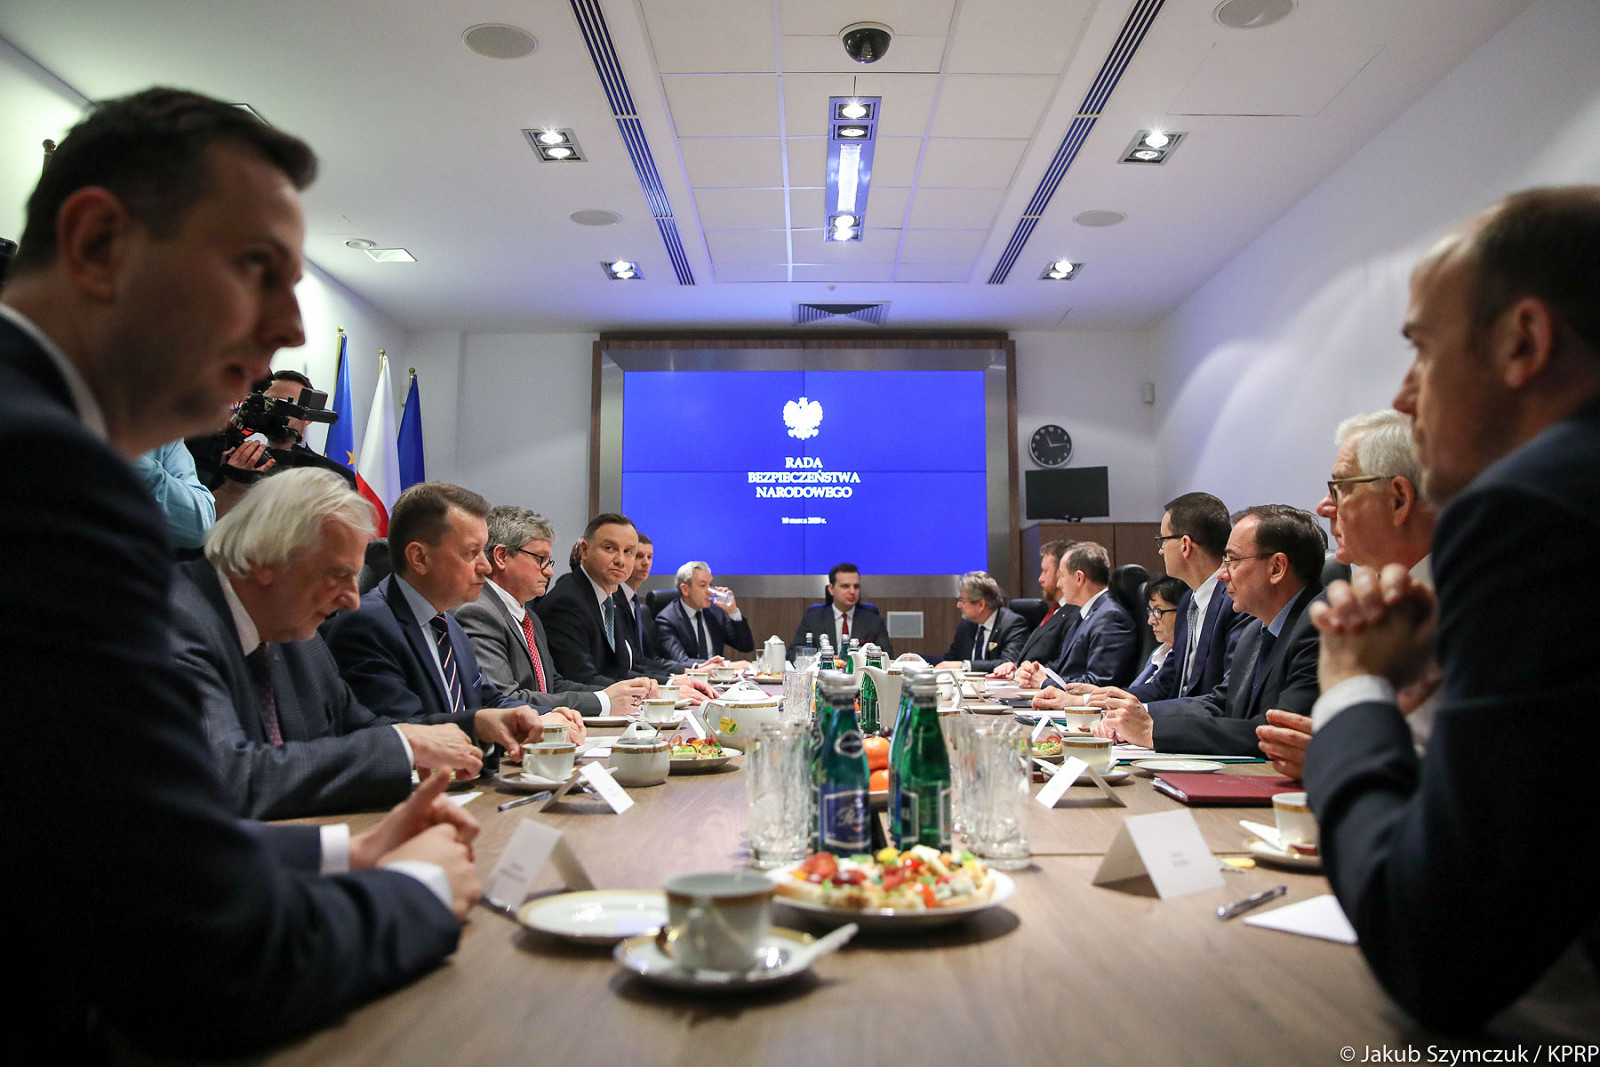 Το συμβούλιο εθνικής ασφάλειας της Πολωνίας θα συνεδριάσει ξανά σήμερα